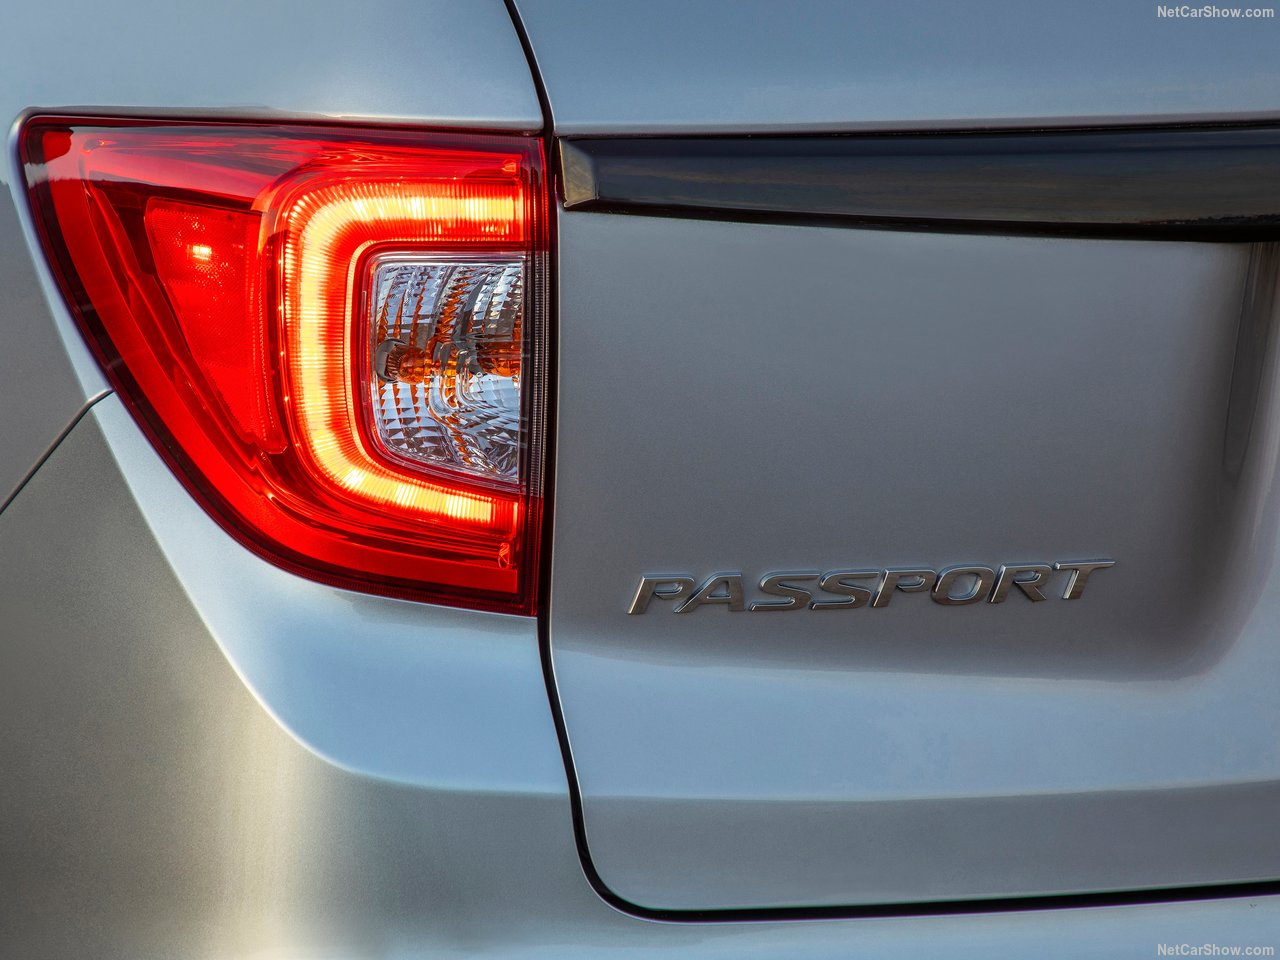 Honda Passport tanıtıldı! 2019 Honda Passport’un motor ve donanım özellikleri neler?